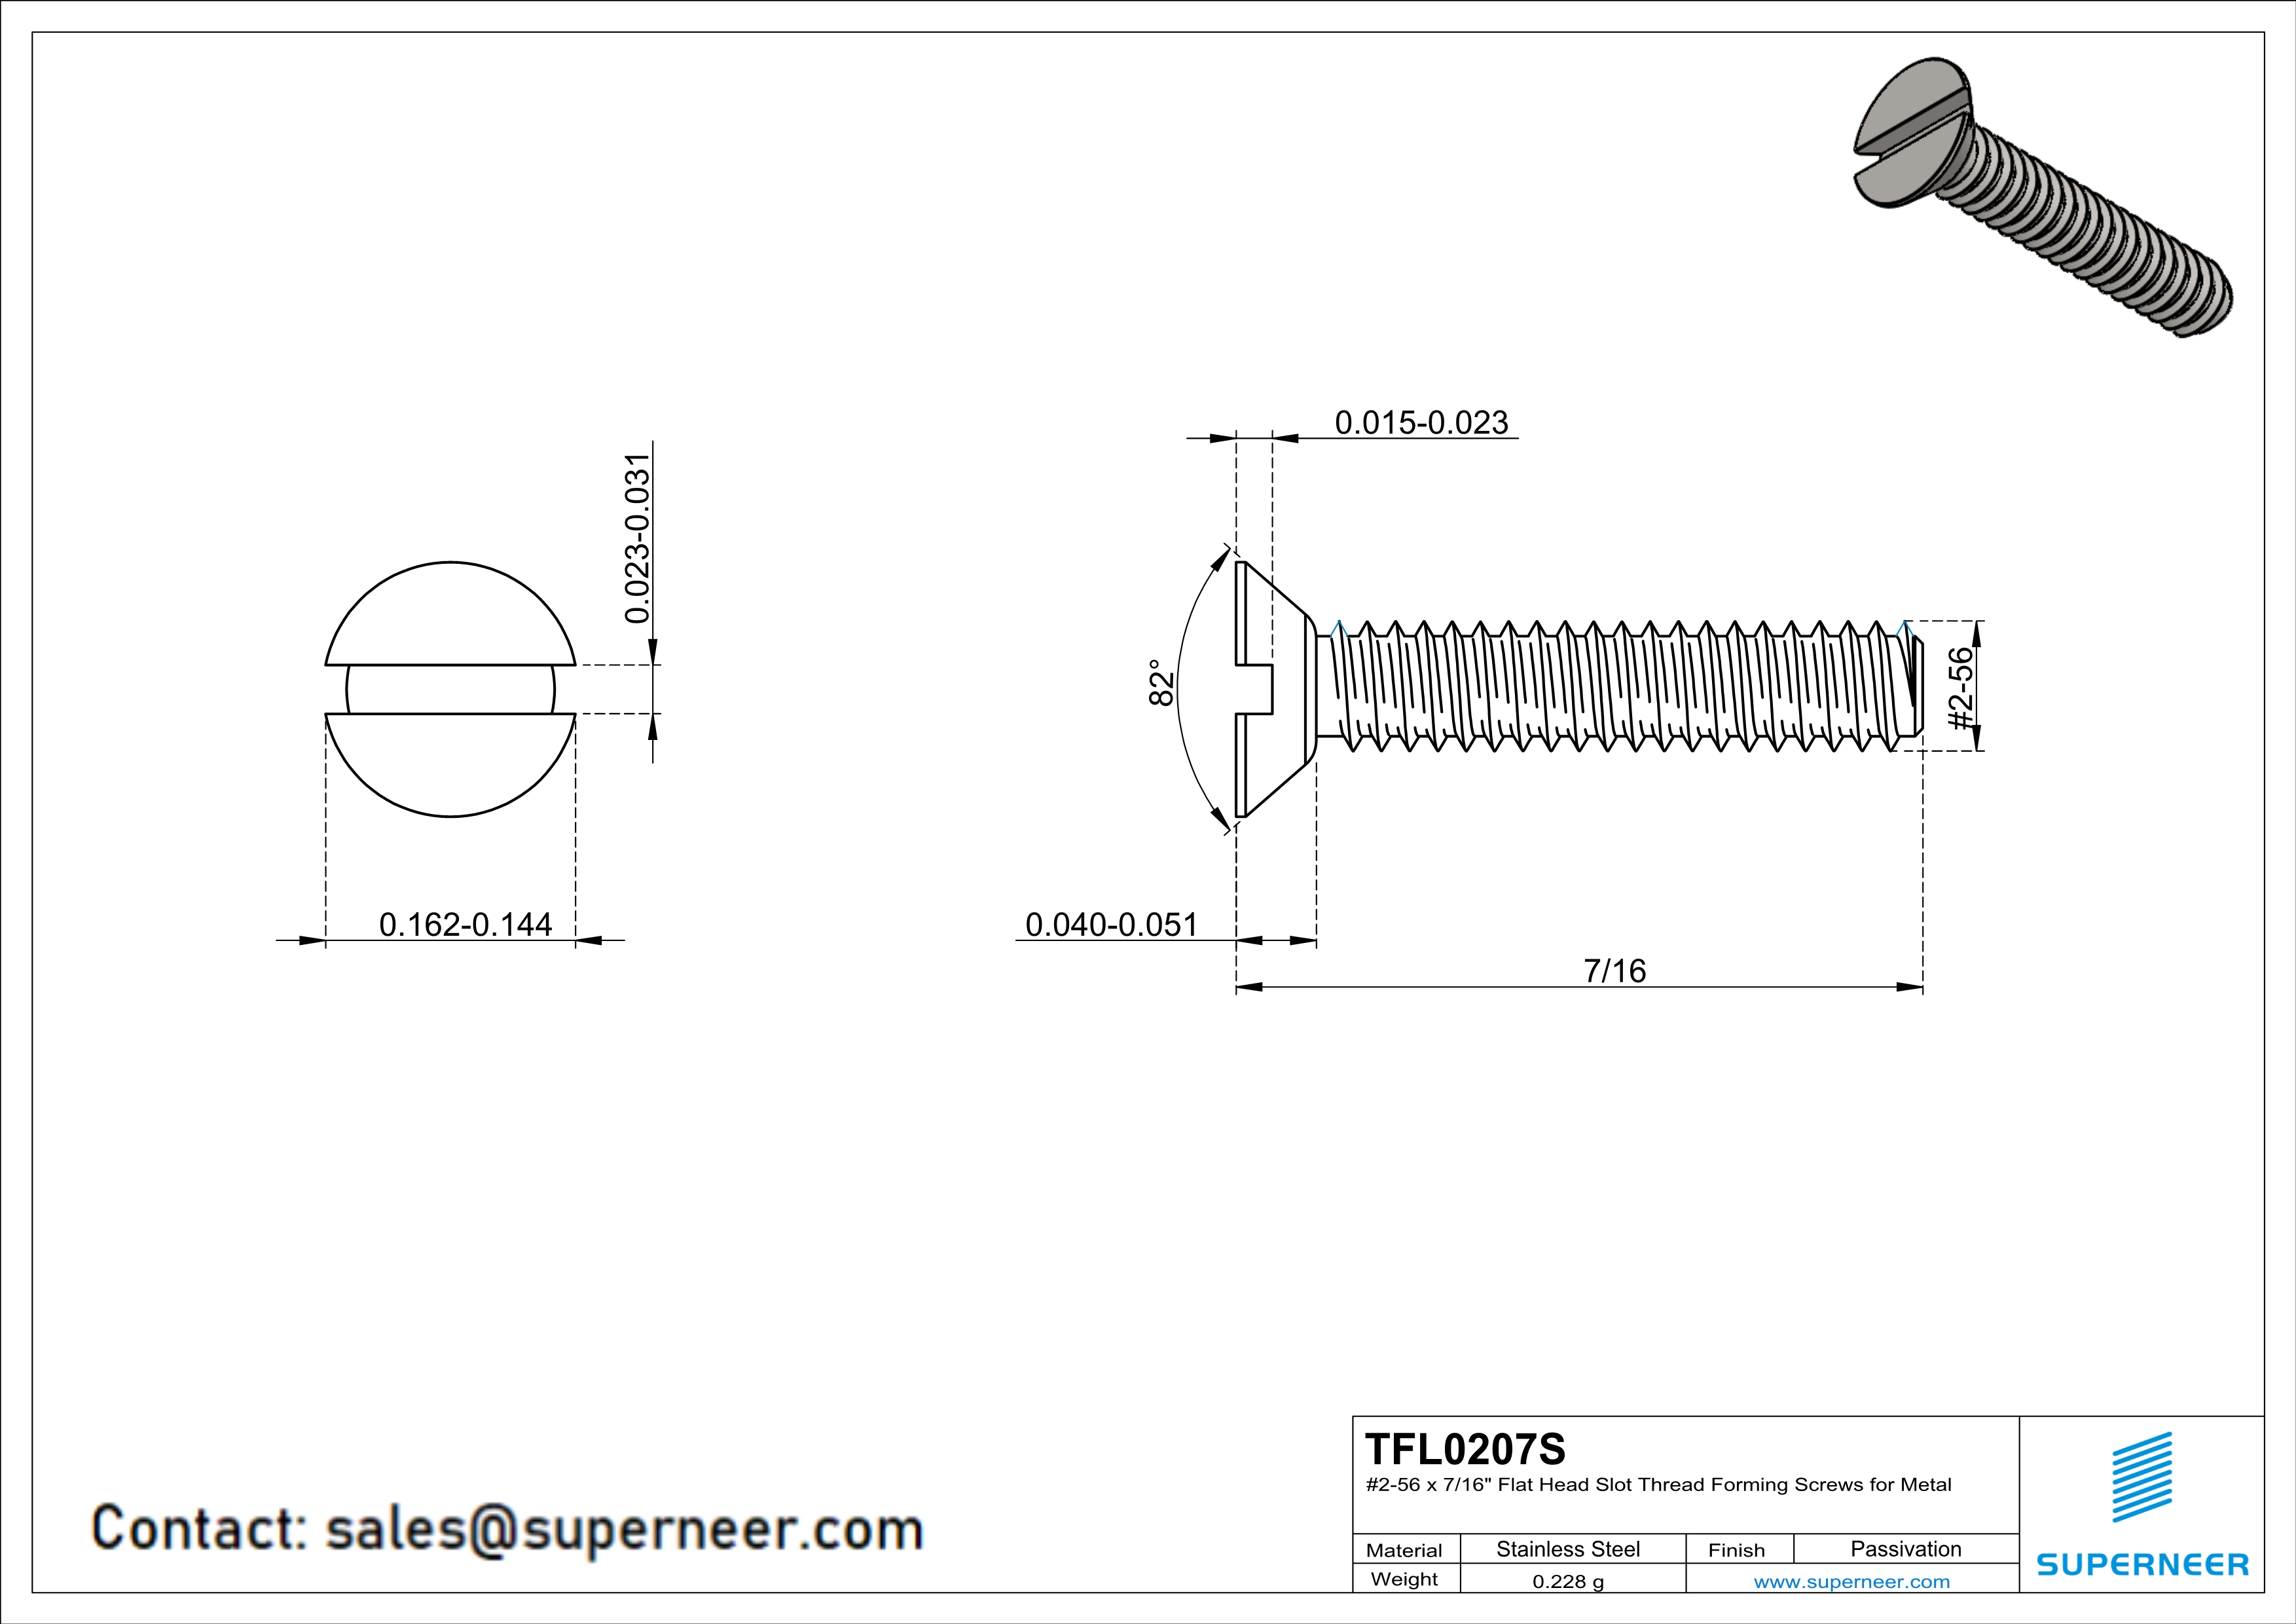 2-56 × 7/16 Flat Head Slot Thread Forming  Screws for Metal  SUS304 Stainless Steel Inox